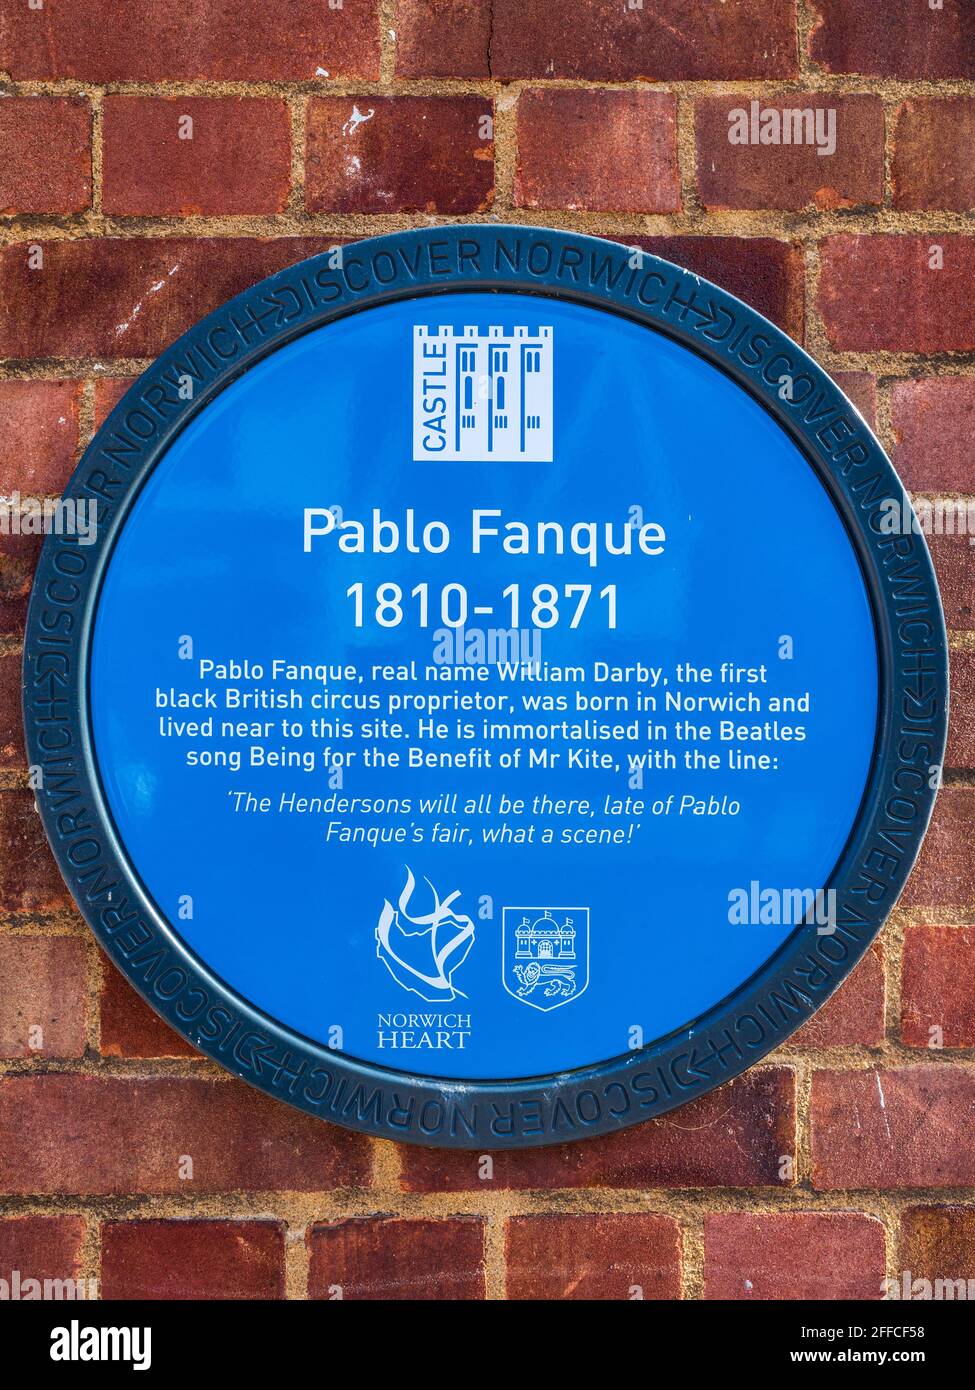 Pablo Fanque Blaue Plakette Norwich - Pablo Fanque, ein Zirkusbesitzer aus Norwich, wurde im Beatles-Lied zum Wohle von Mr Kite verewigt. Stockfoto